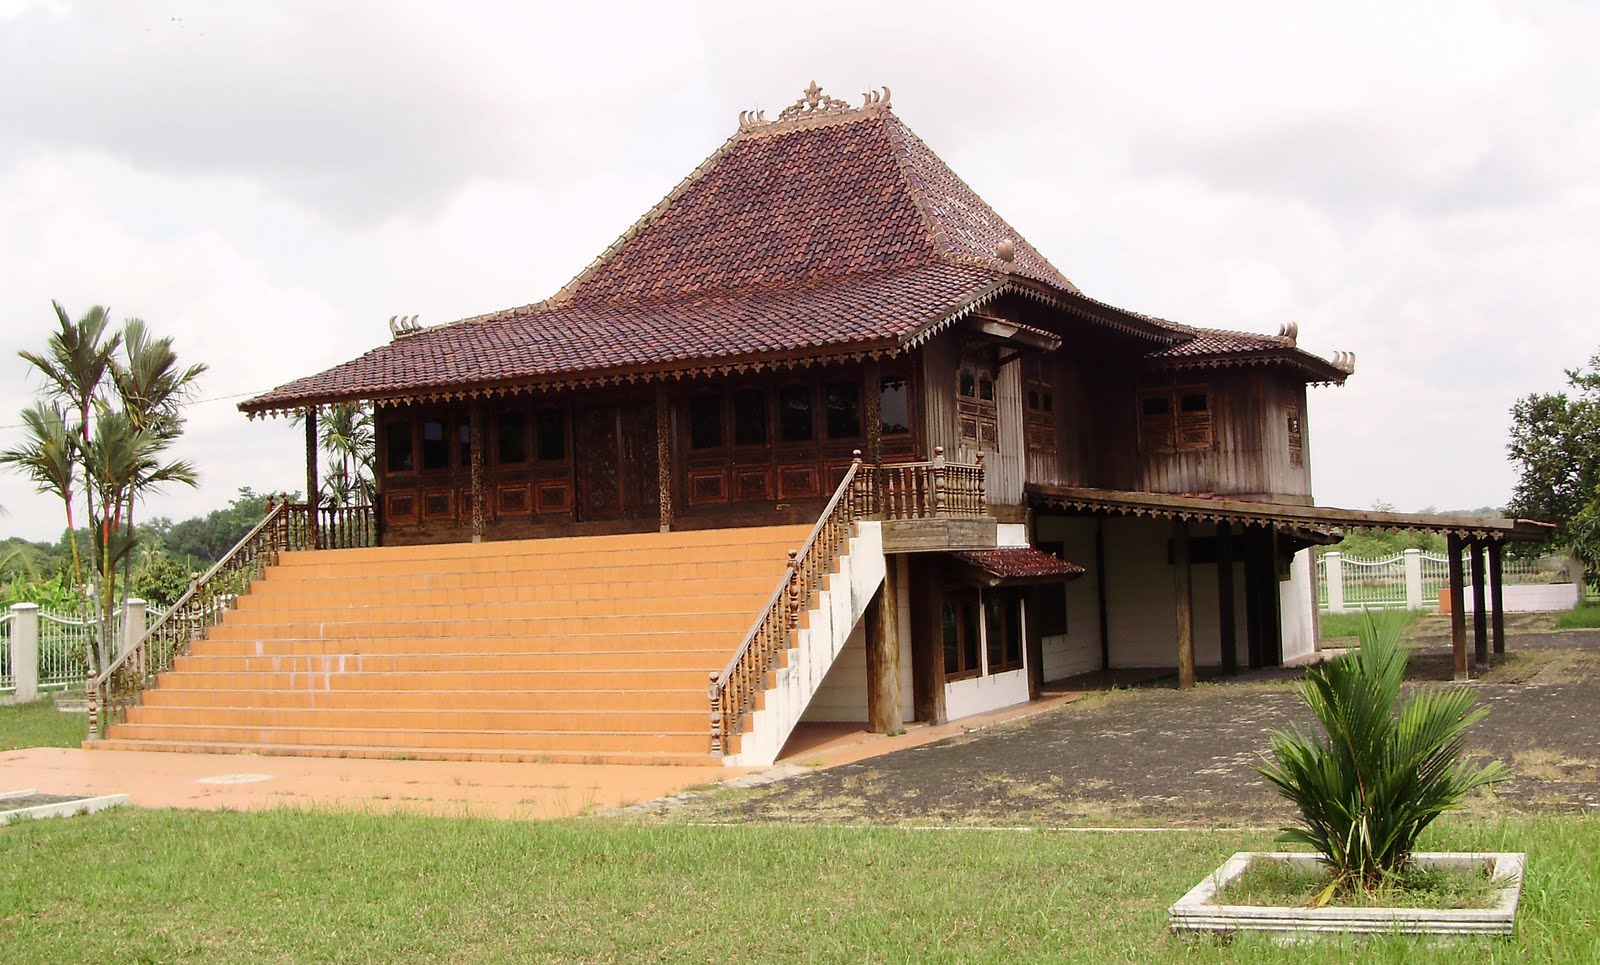 Rumah adat tradisional rumah limas